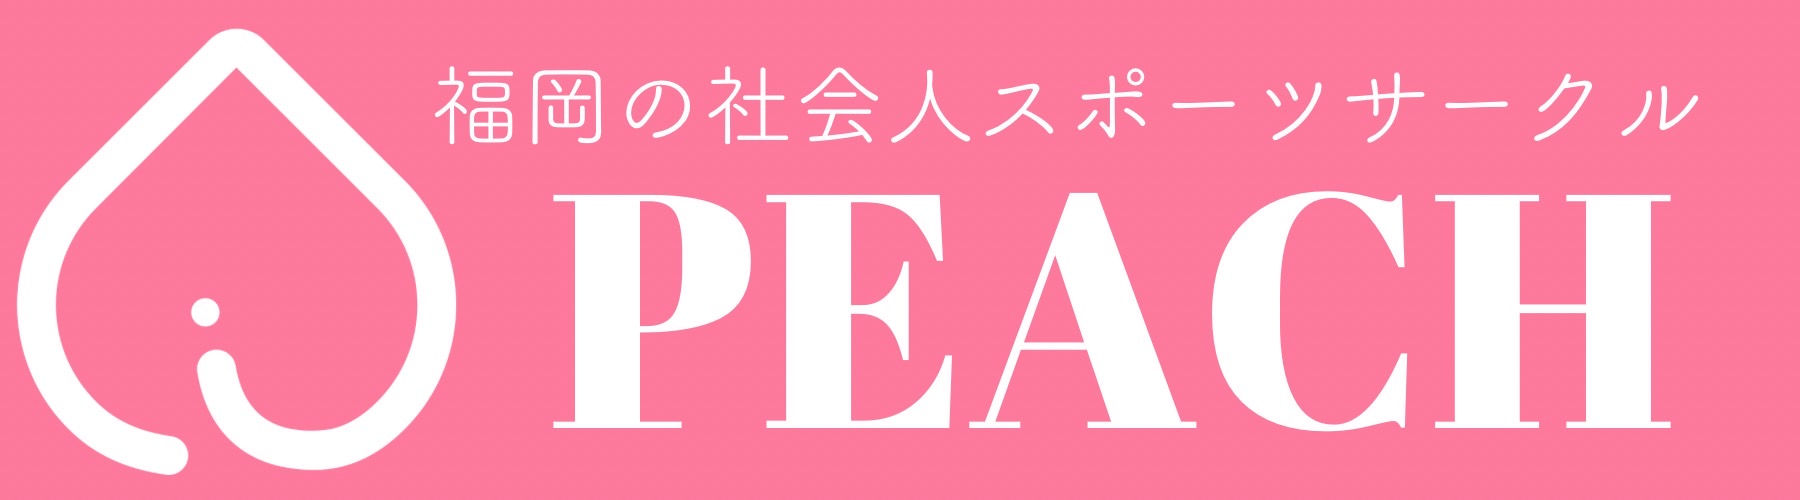 福岡スポーツサークル【peach】